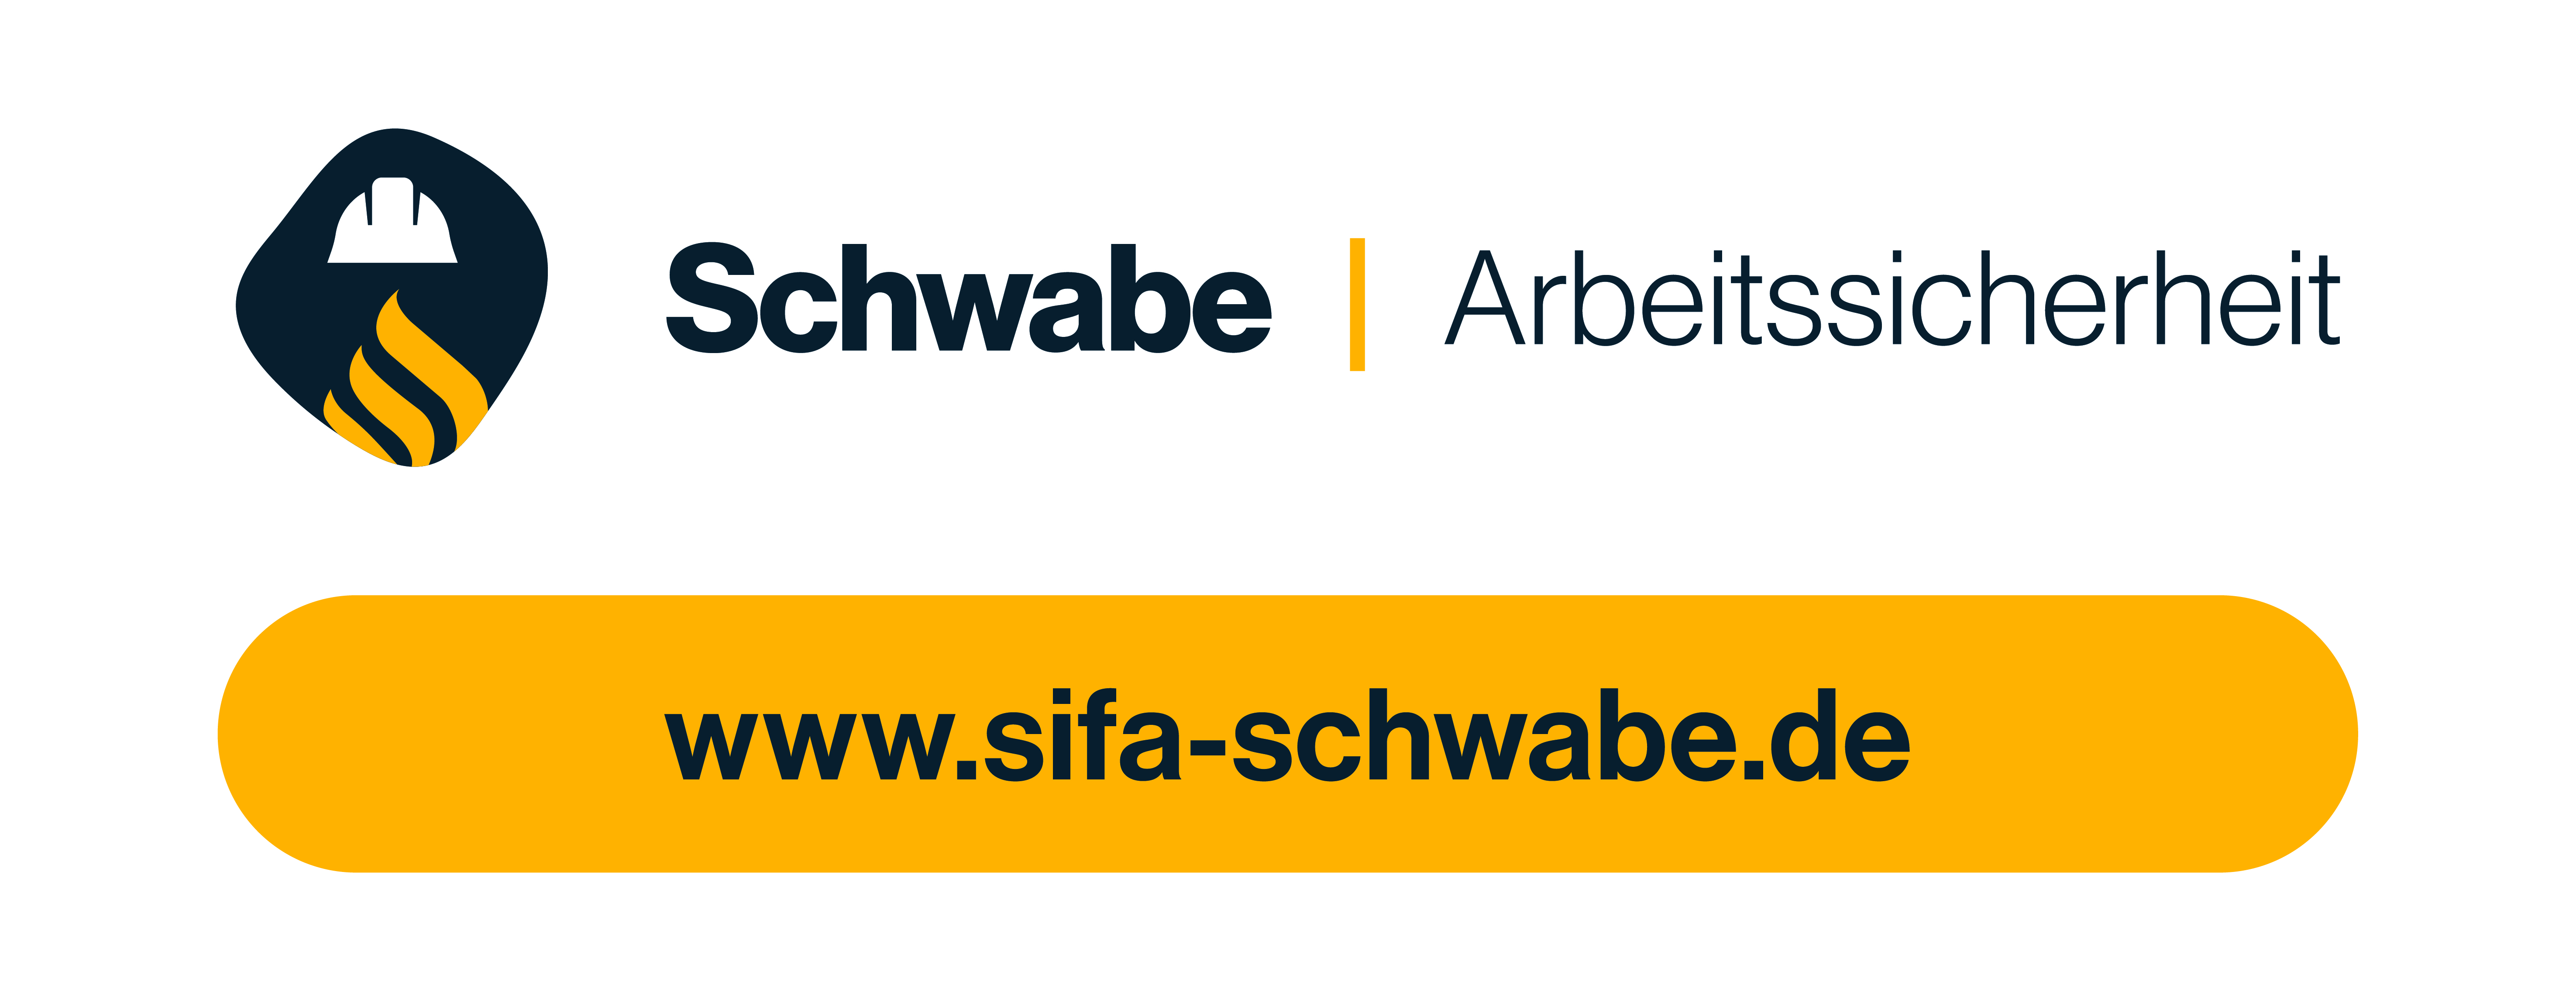 schwabe logo sponsoring b